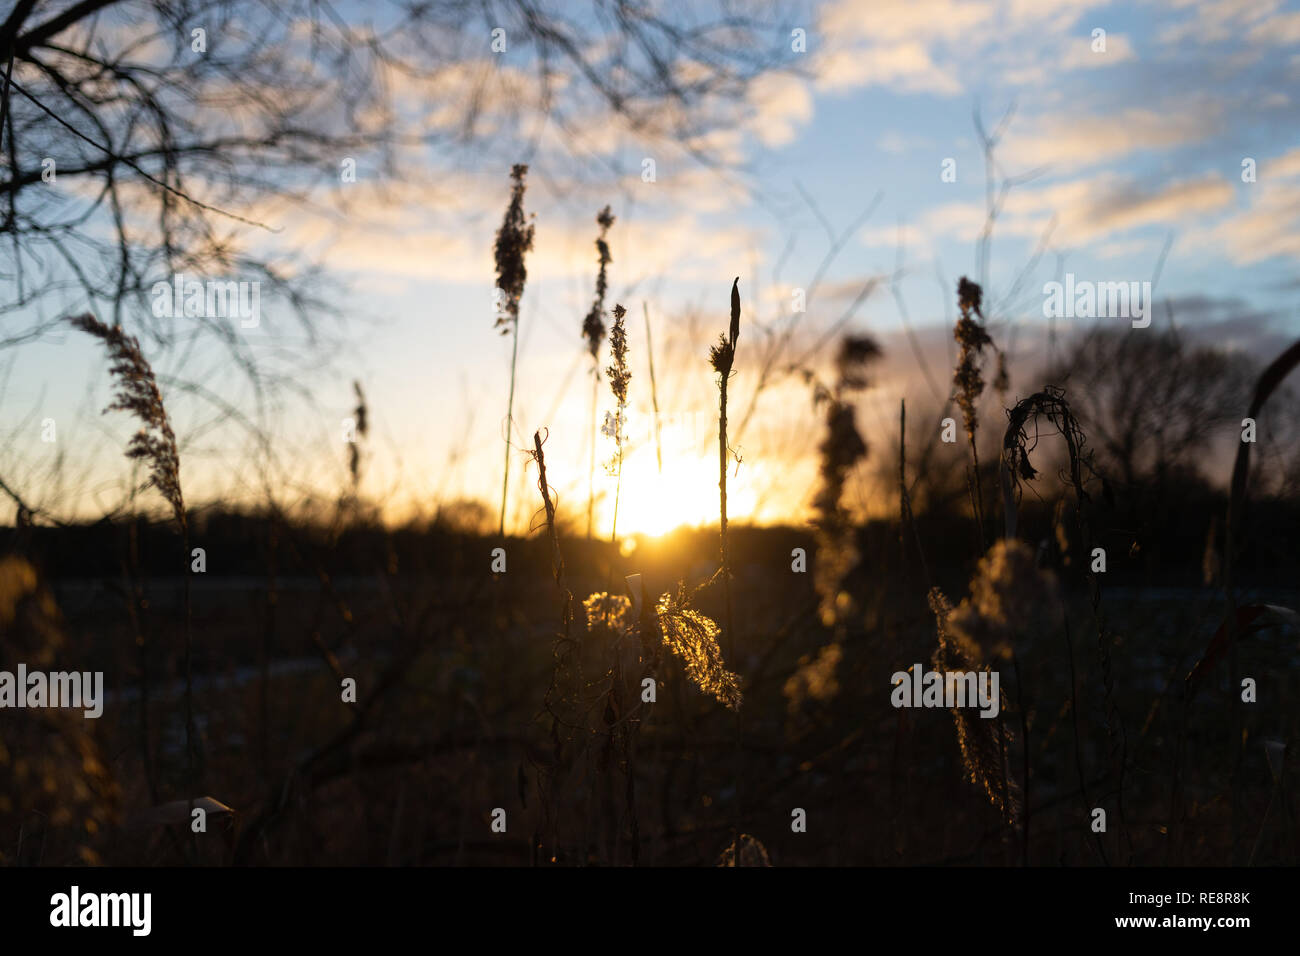 Winterliche Abendsonne scheint durch trockenes Rispengras. Stock Photo